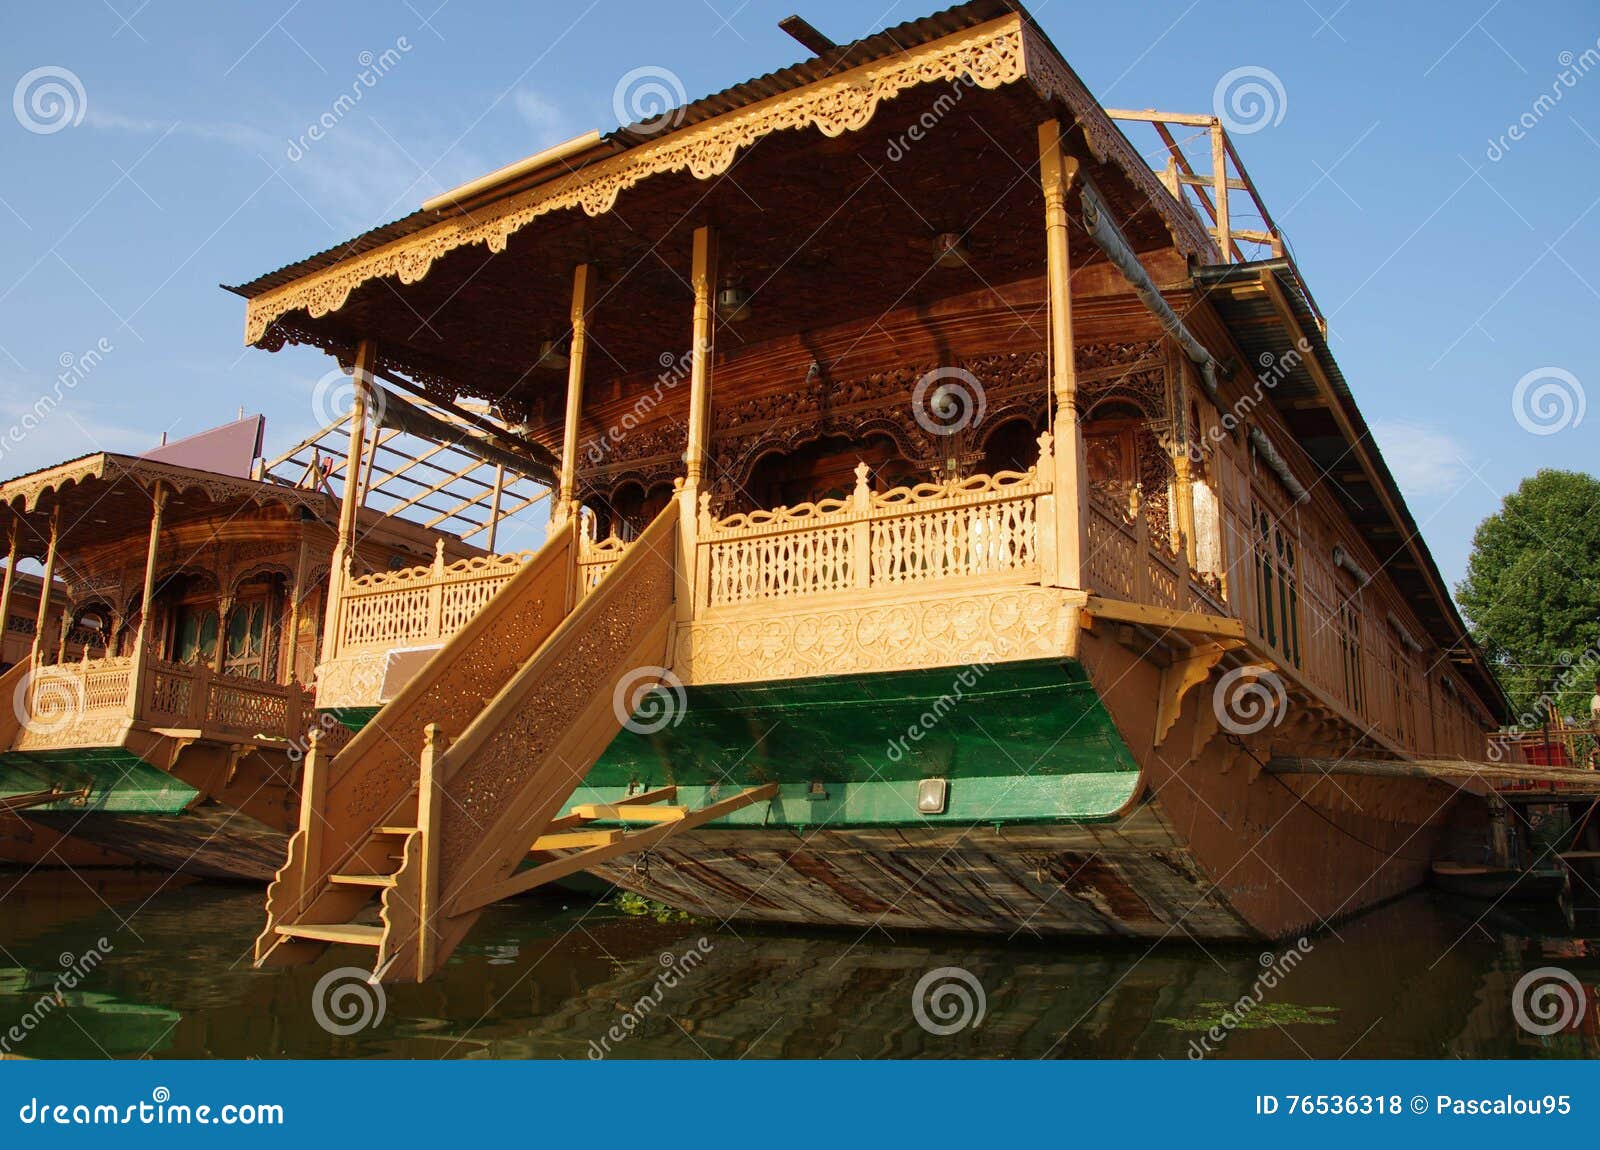 houseboats in srinagar in kashmir, india